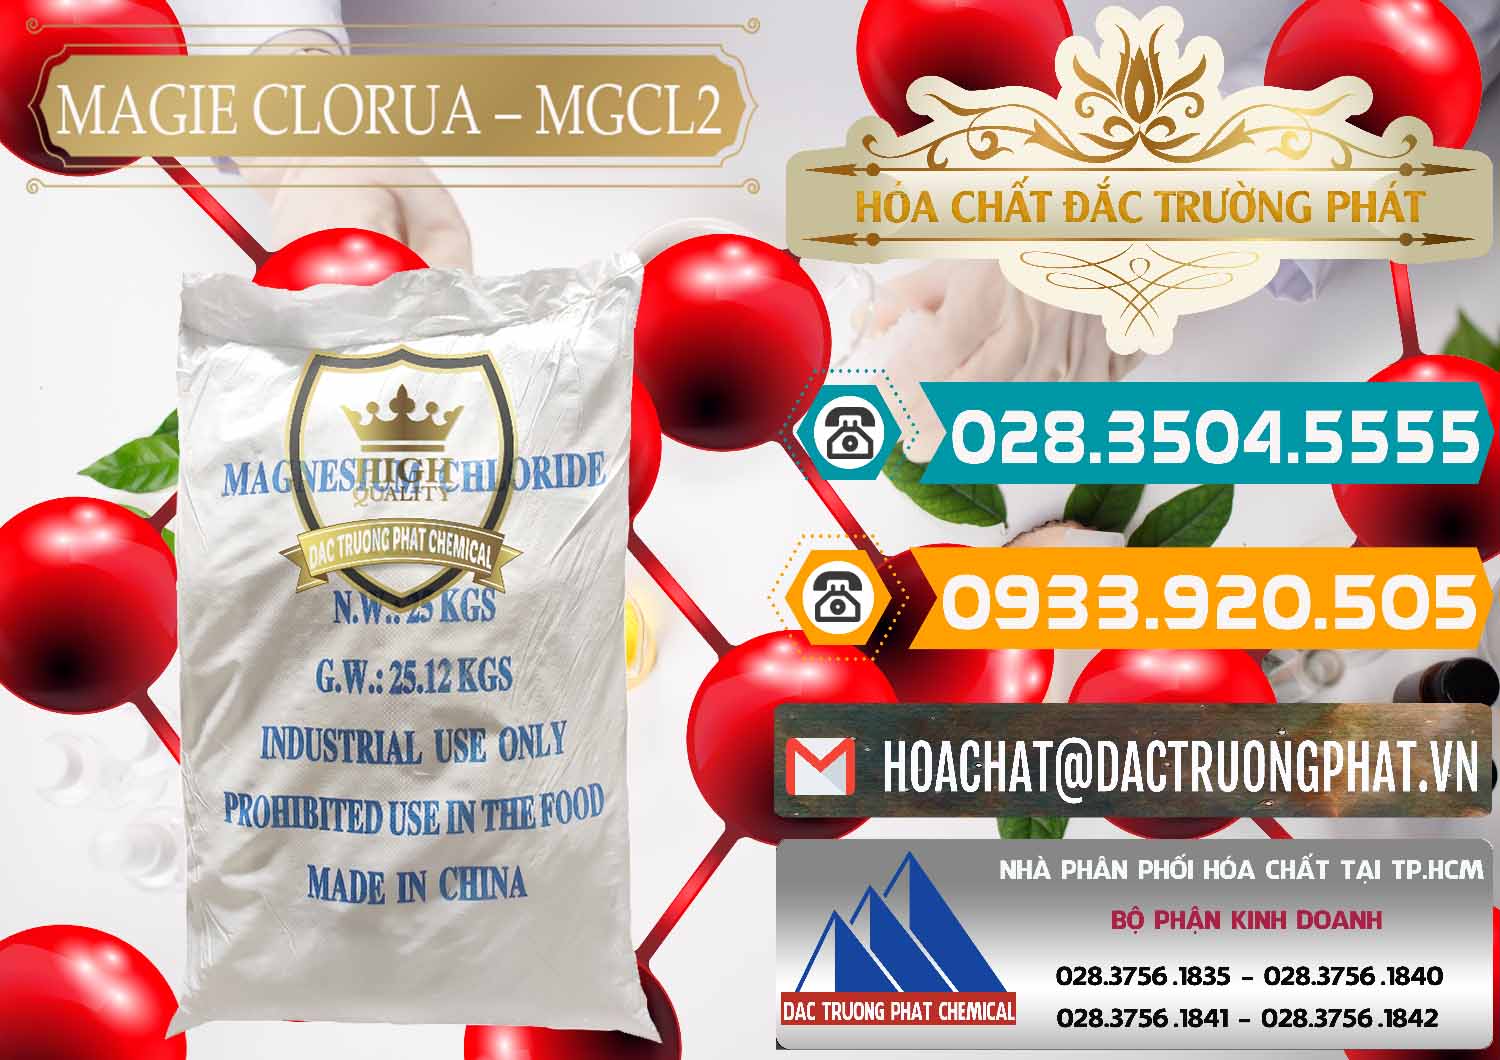 Cty chuyên kinh doanh - bán Magie Clorua – MGCL2 96% Dạng Vảy Trung Quốc China - 0091 - Đơn vị chuyên kinh doanh ( cung cấp ) hóa chất tại TP.HCM - congtyhoachat.vn